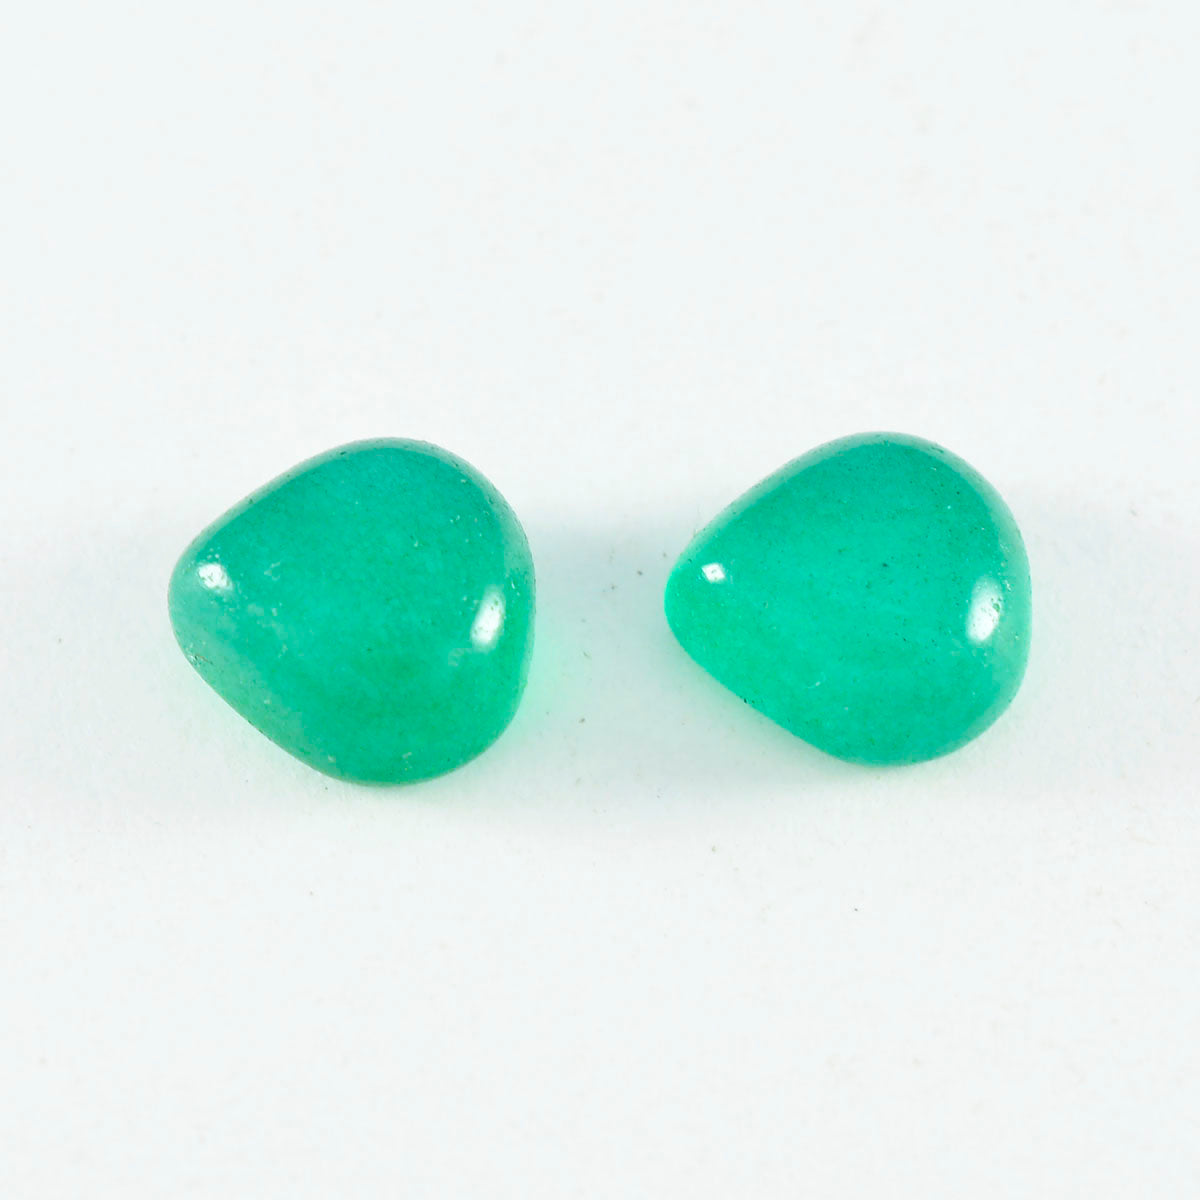 Riyogems 1 pieza cabujón de ónix verde 9x9 mm forma de corazón gemas de calidad fantástica